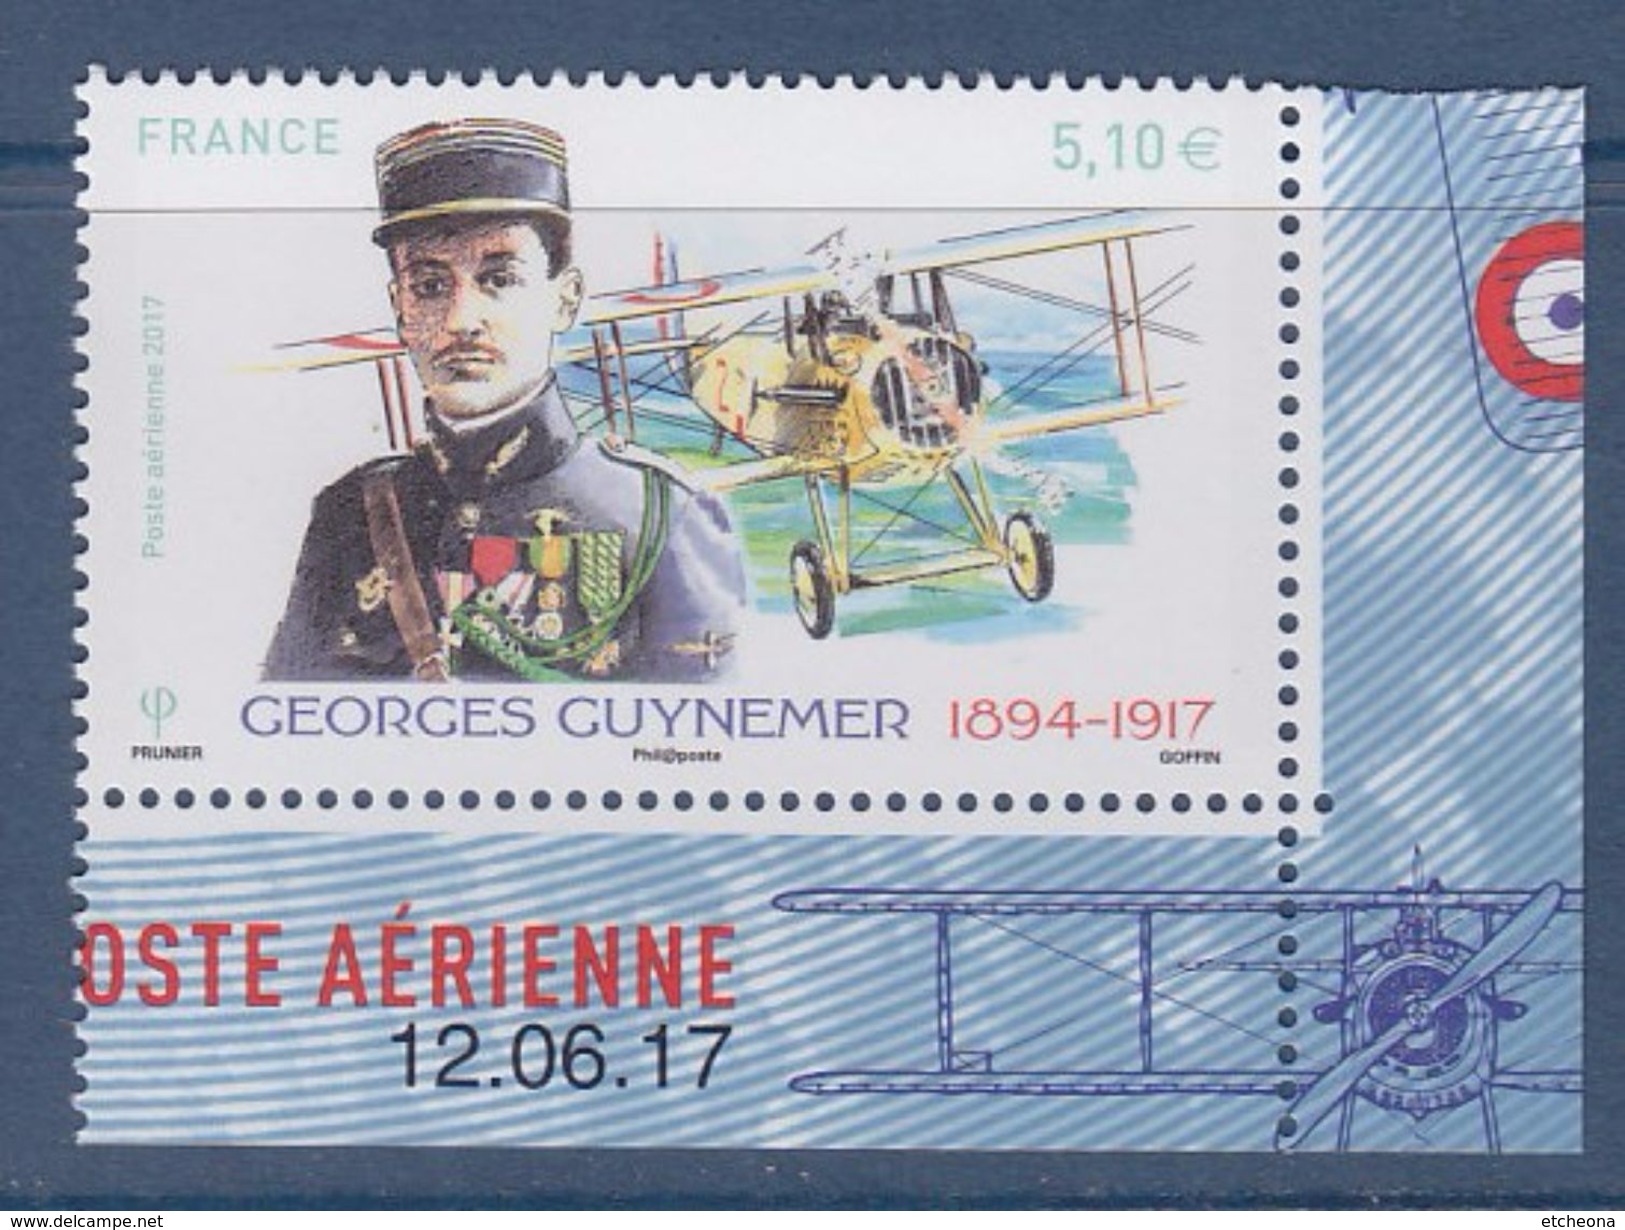 = Coin Daté 12.06.17 De Feuillet Georges Guynemer Et Son Biplan 5.10€ X1 N°PA81a - Airmail